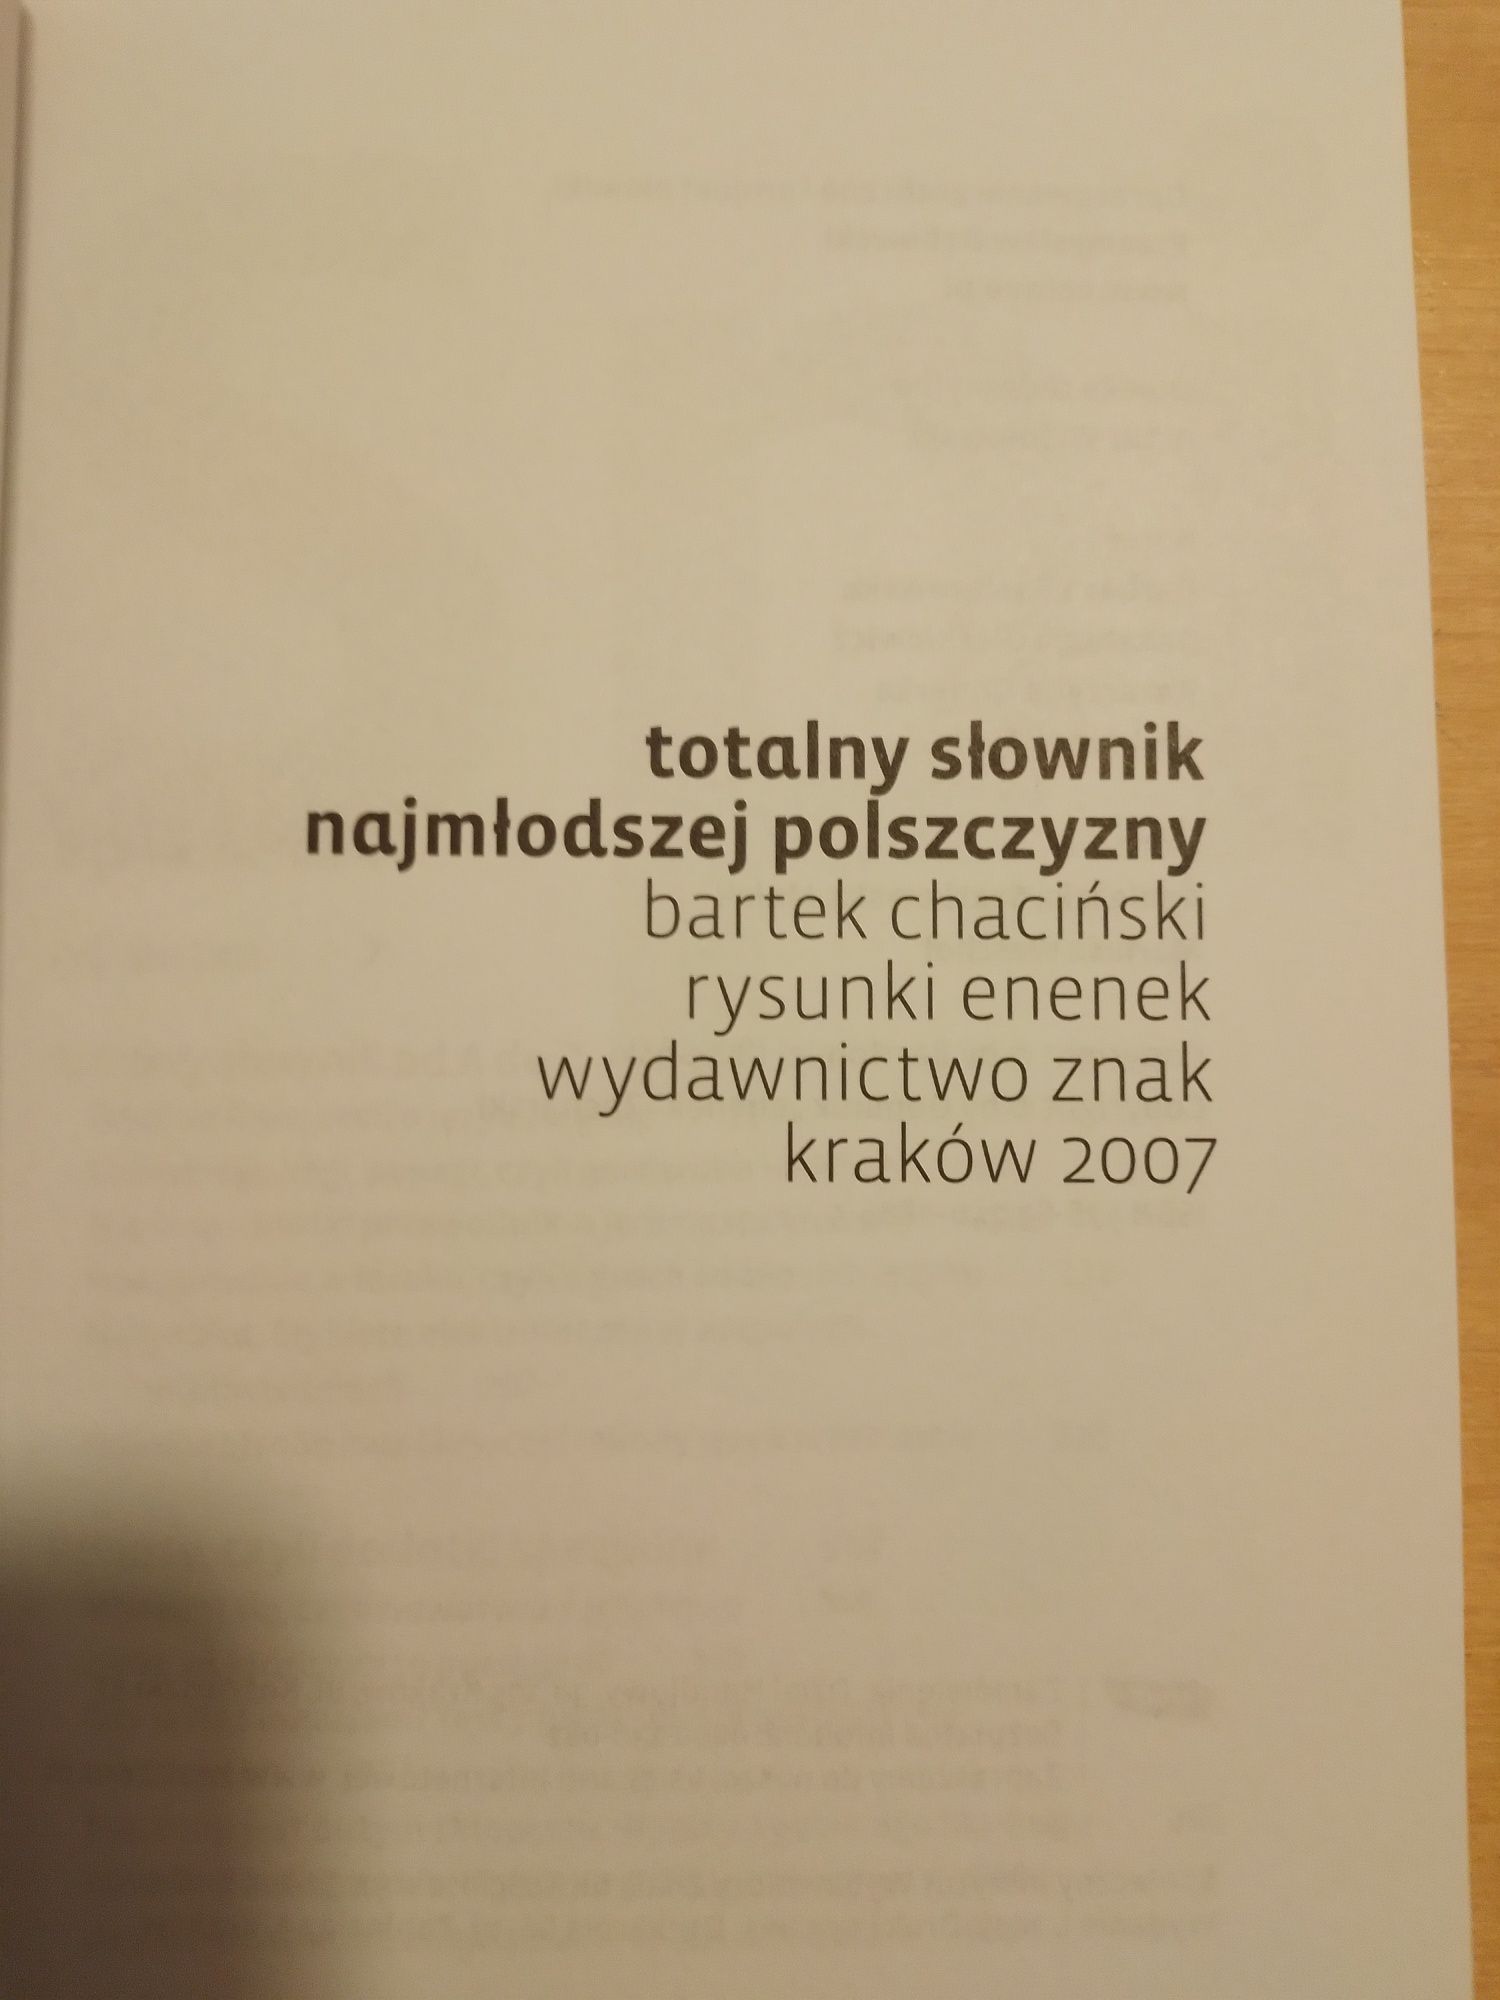 Totalny słownik najmłodszej polszczyzny